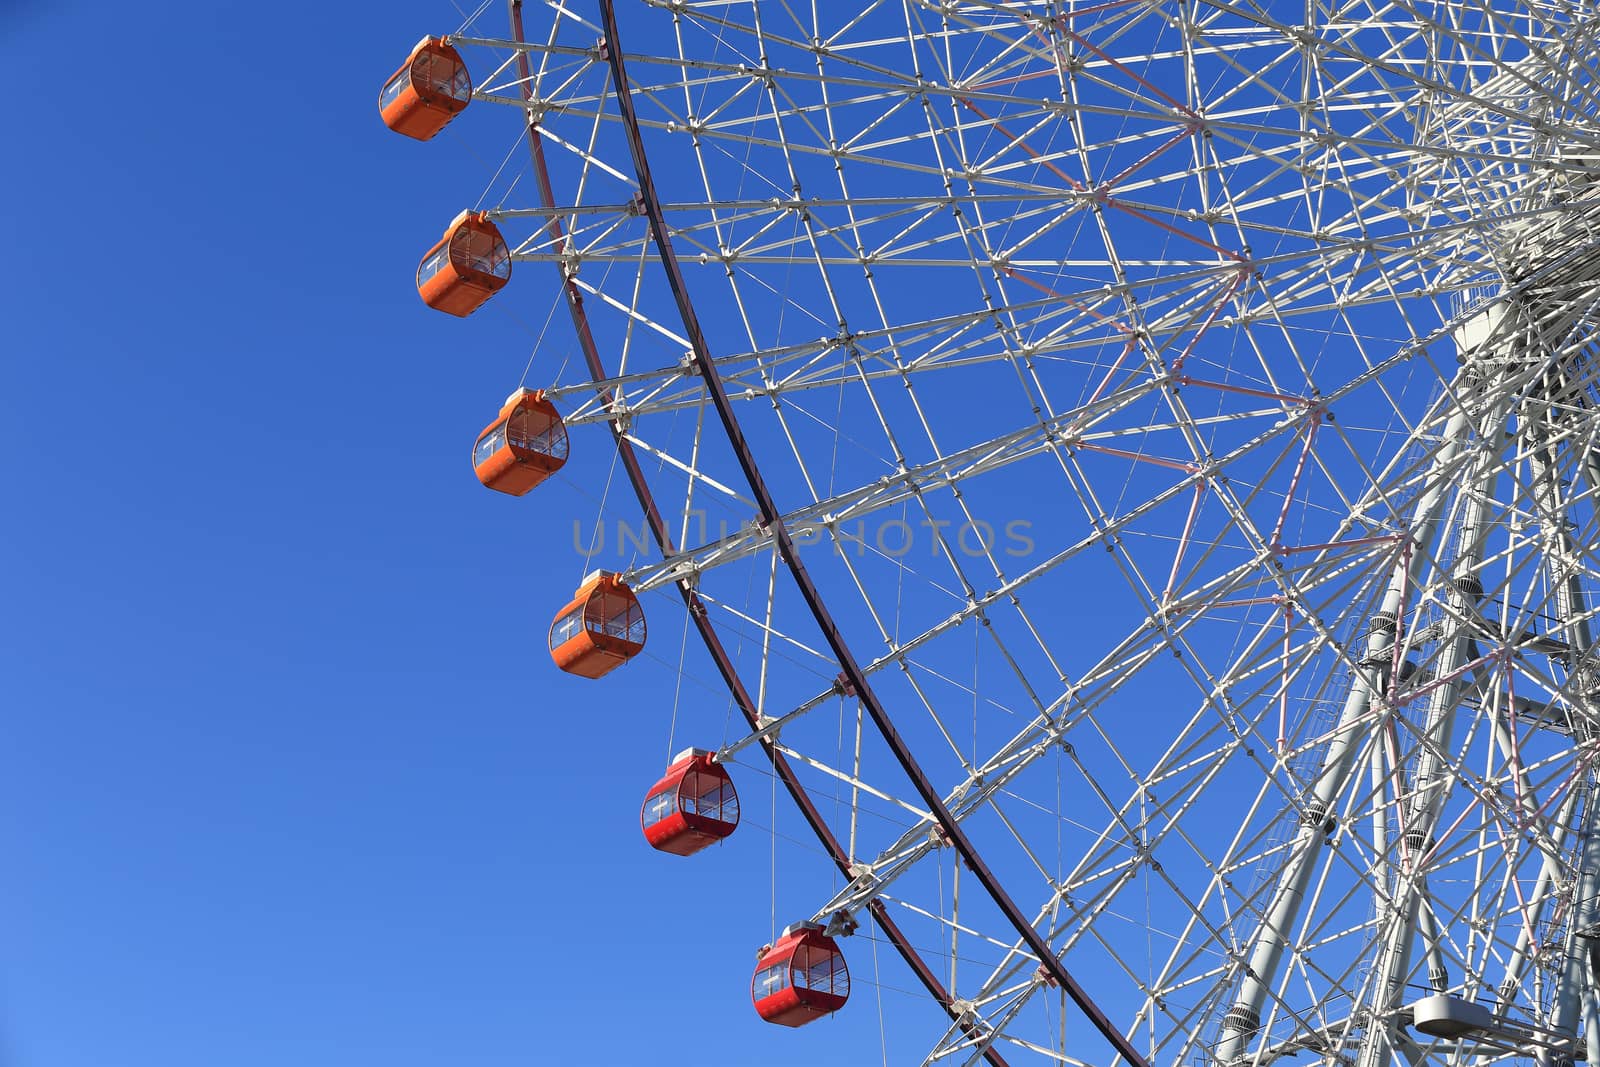 Ferris Wheel - Osaka City in Japan by rufous